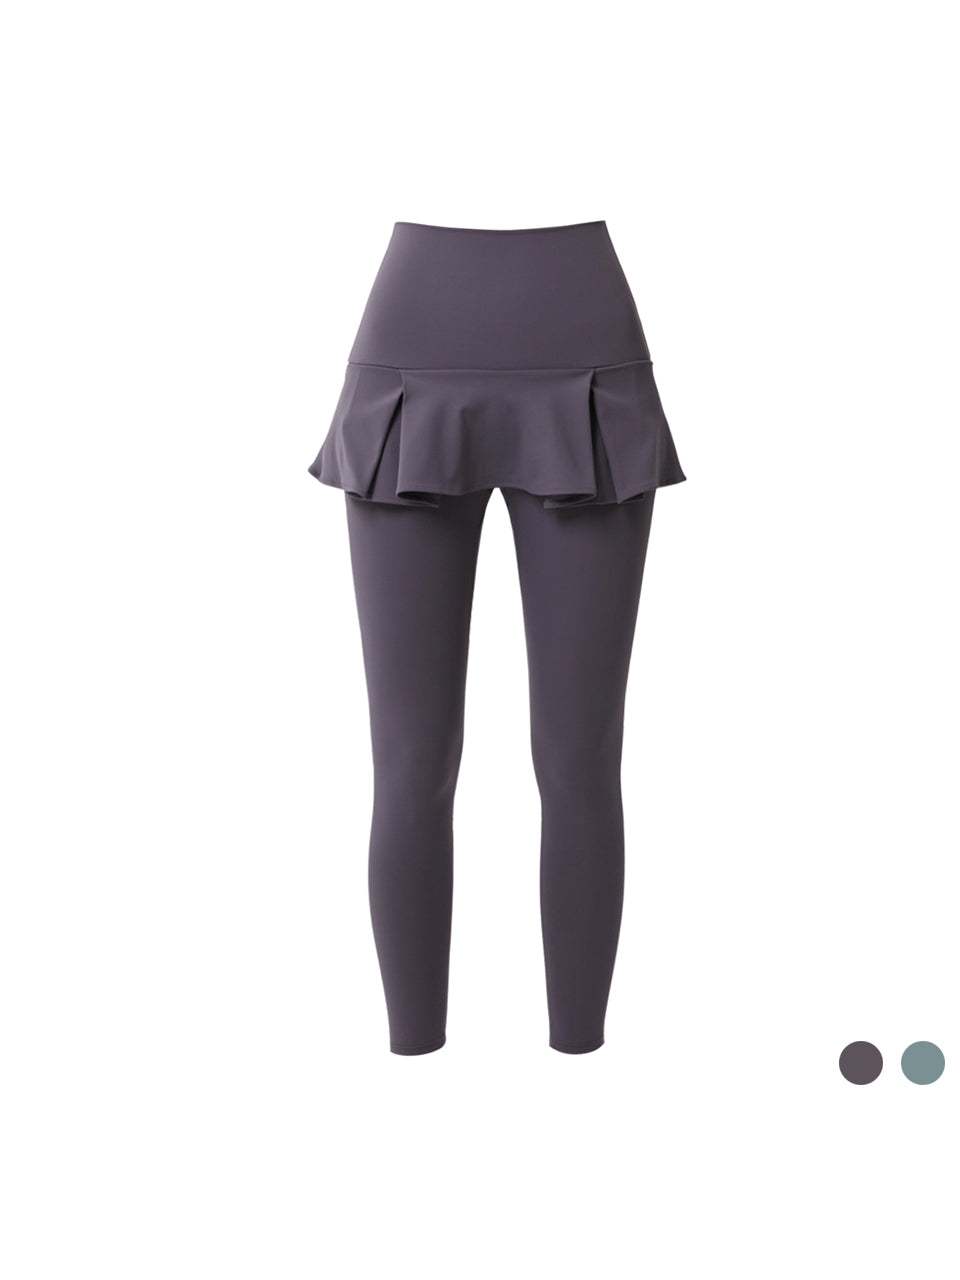 Powder Skirt Leggings (2colors)